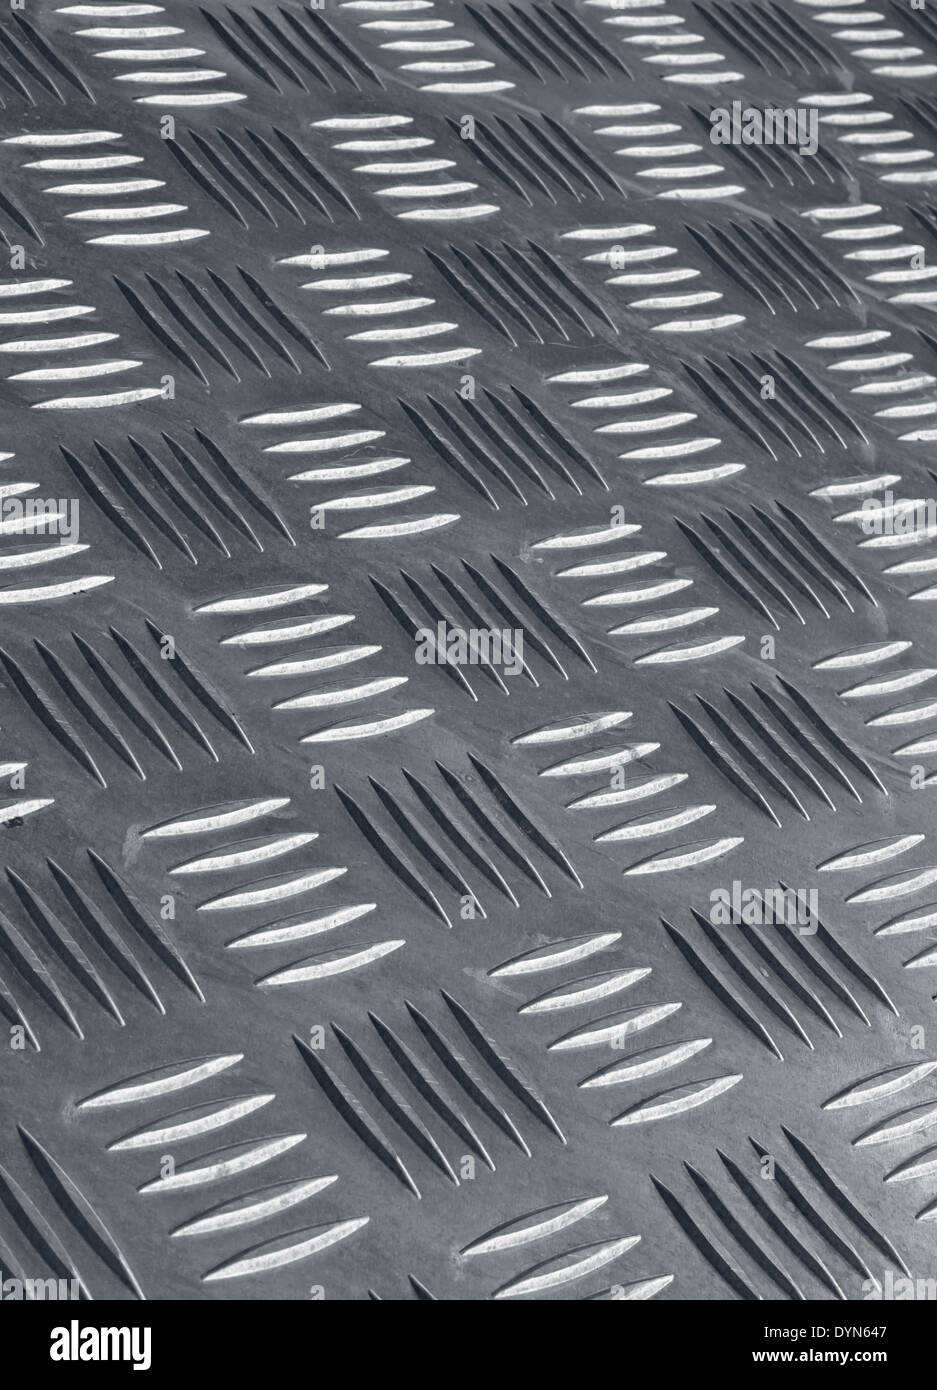 Anti-Rutsch-Industriemetall Bodenbelag detail Stockfotografie - Alamy